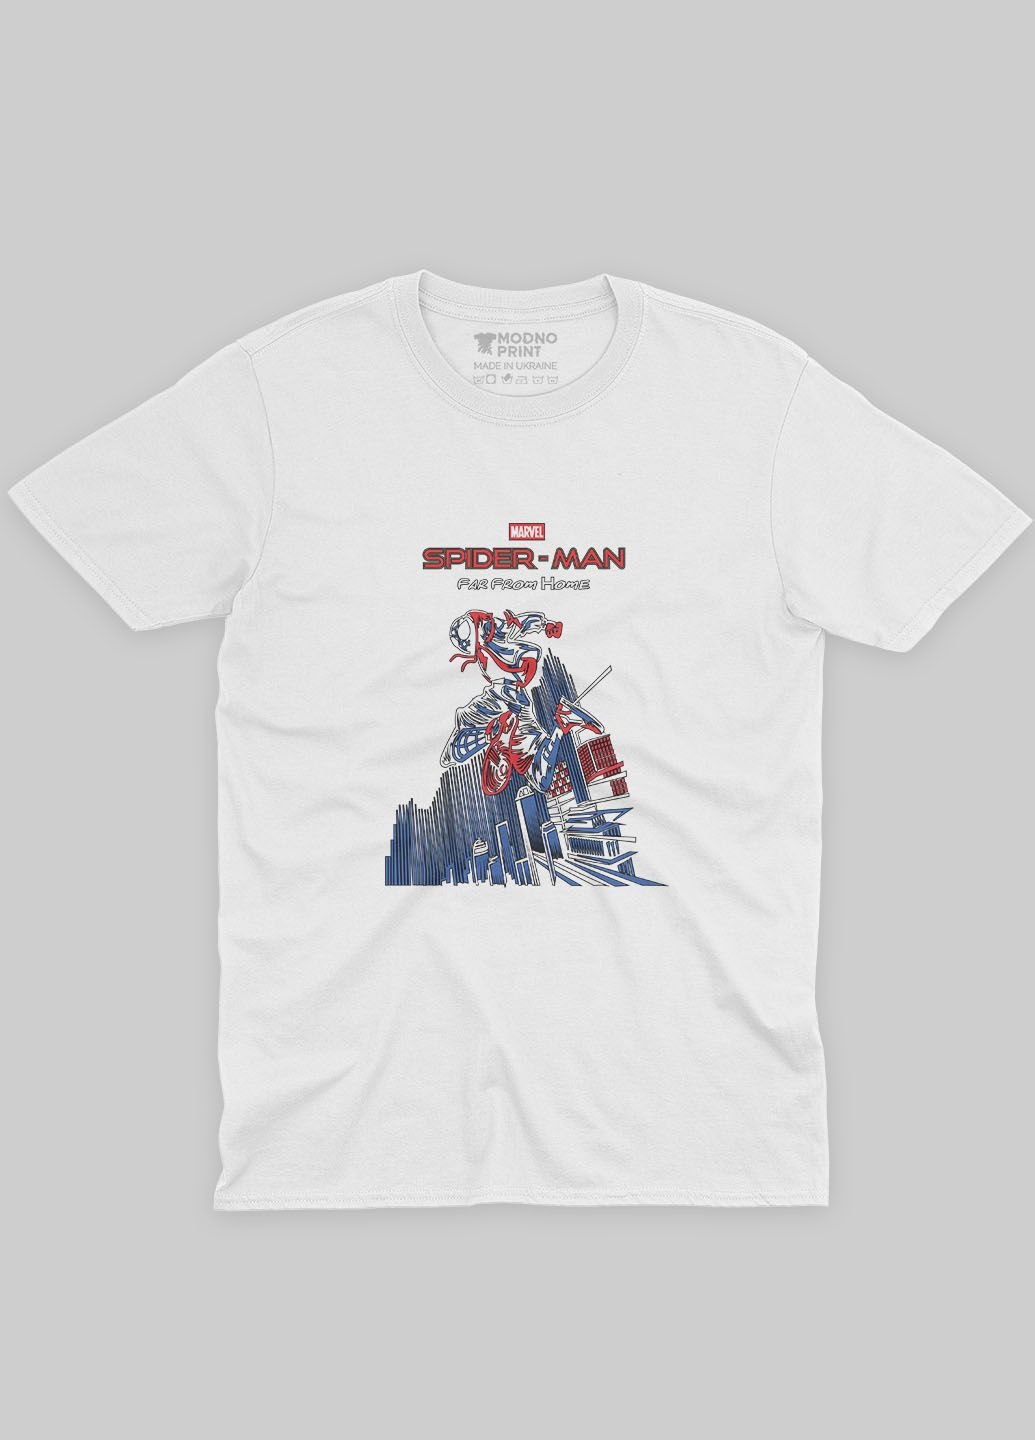 Белая демисезонная футболка для мальчика с принтом супергероя - человек-паук (ts001-1-whi-006-014-041-b) Modno